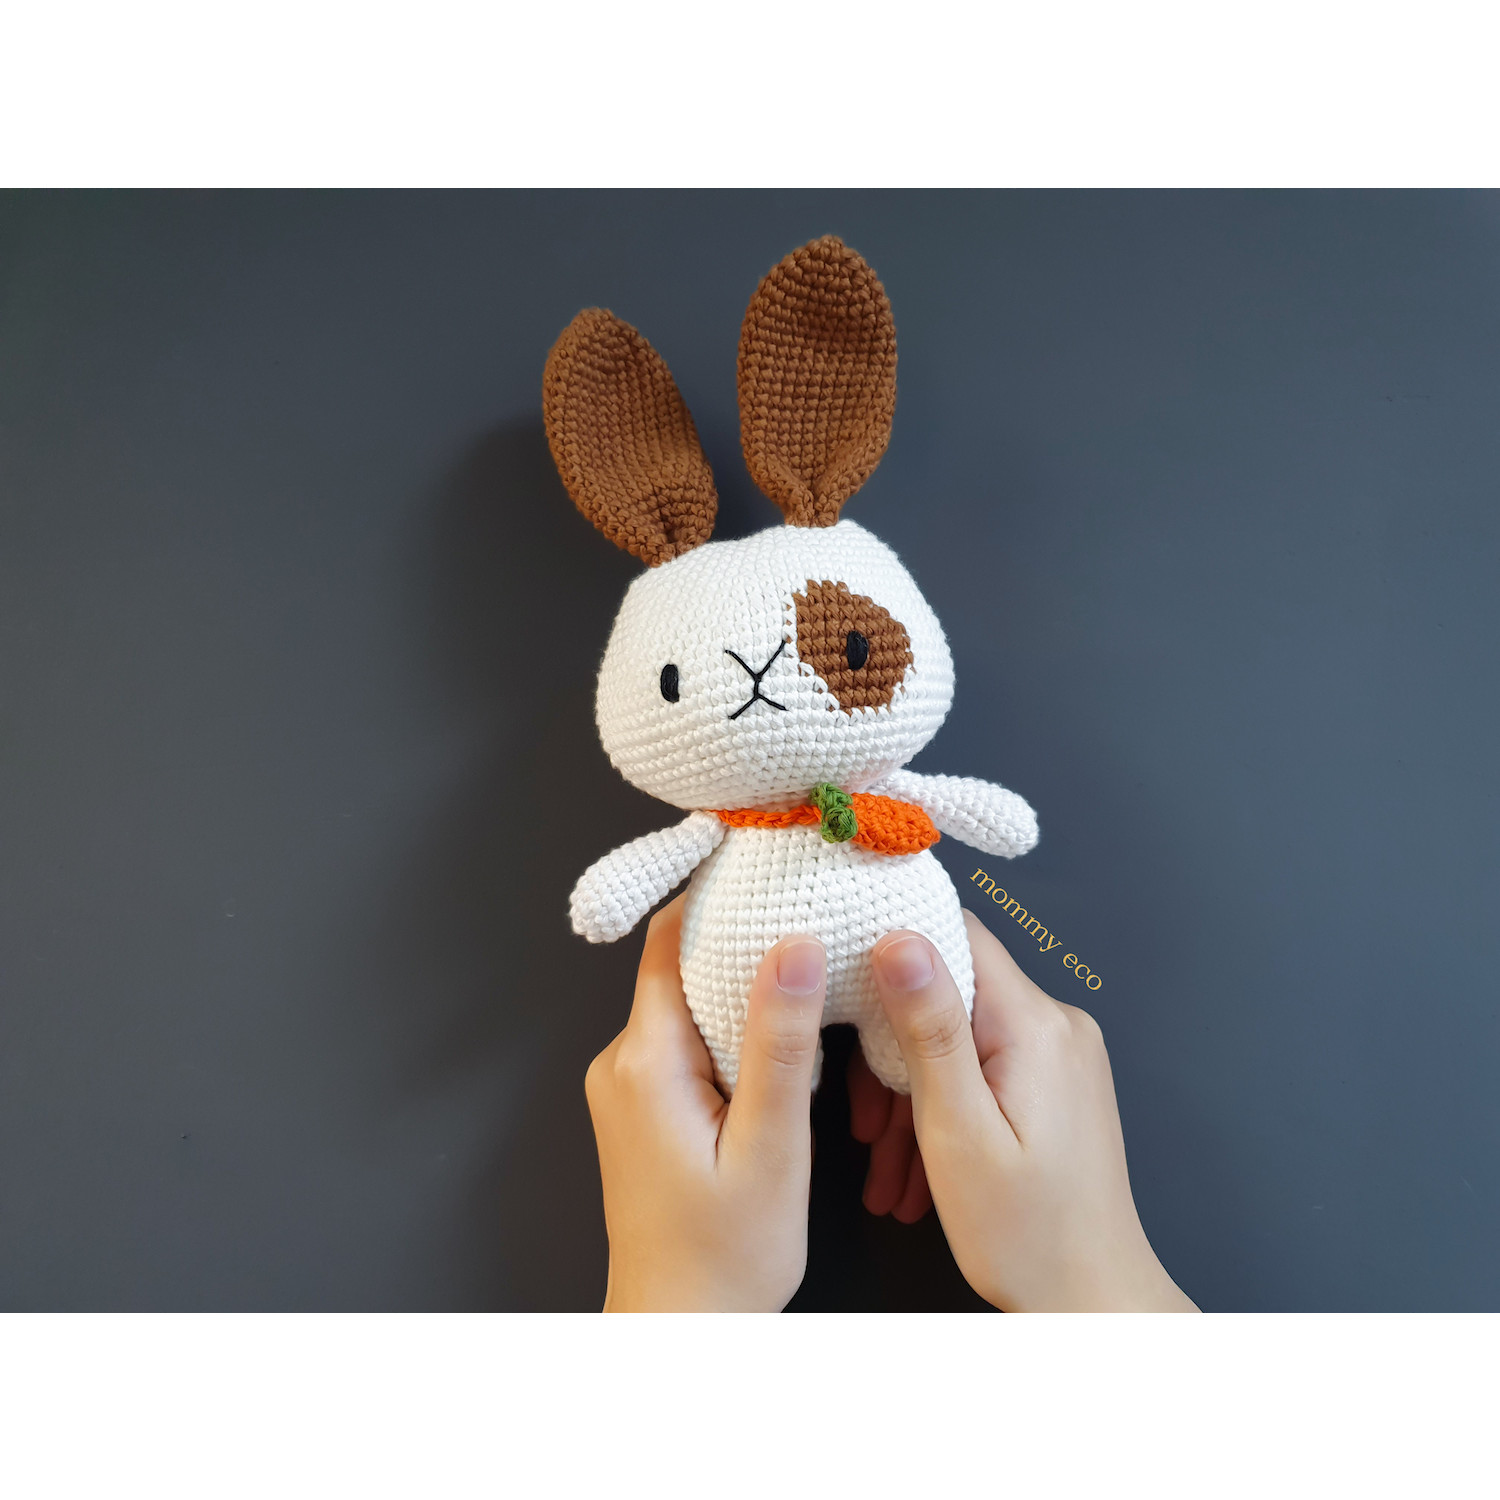 Thú len handmade amigurumi, đan móc thú len, đồ chơi len an toàn cho bé. Thỏ đi học đeo cà rốt